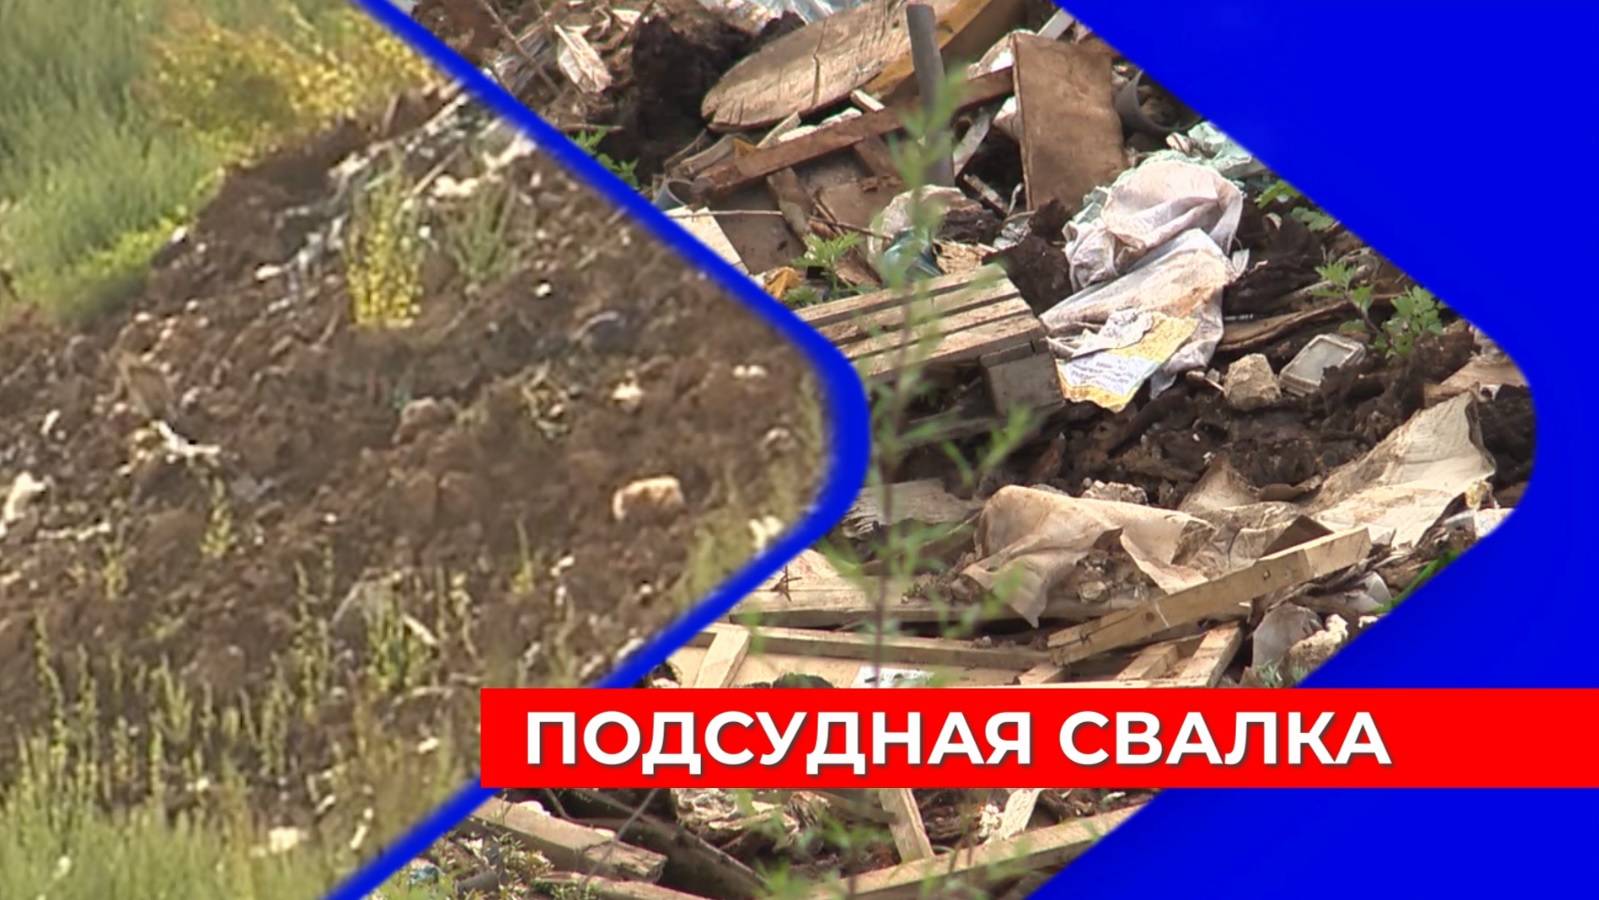 До суда доведено расследование дела о свалке с экологическим ущербом почти на 100 миллионов рублей